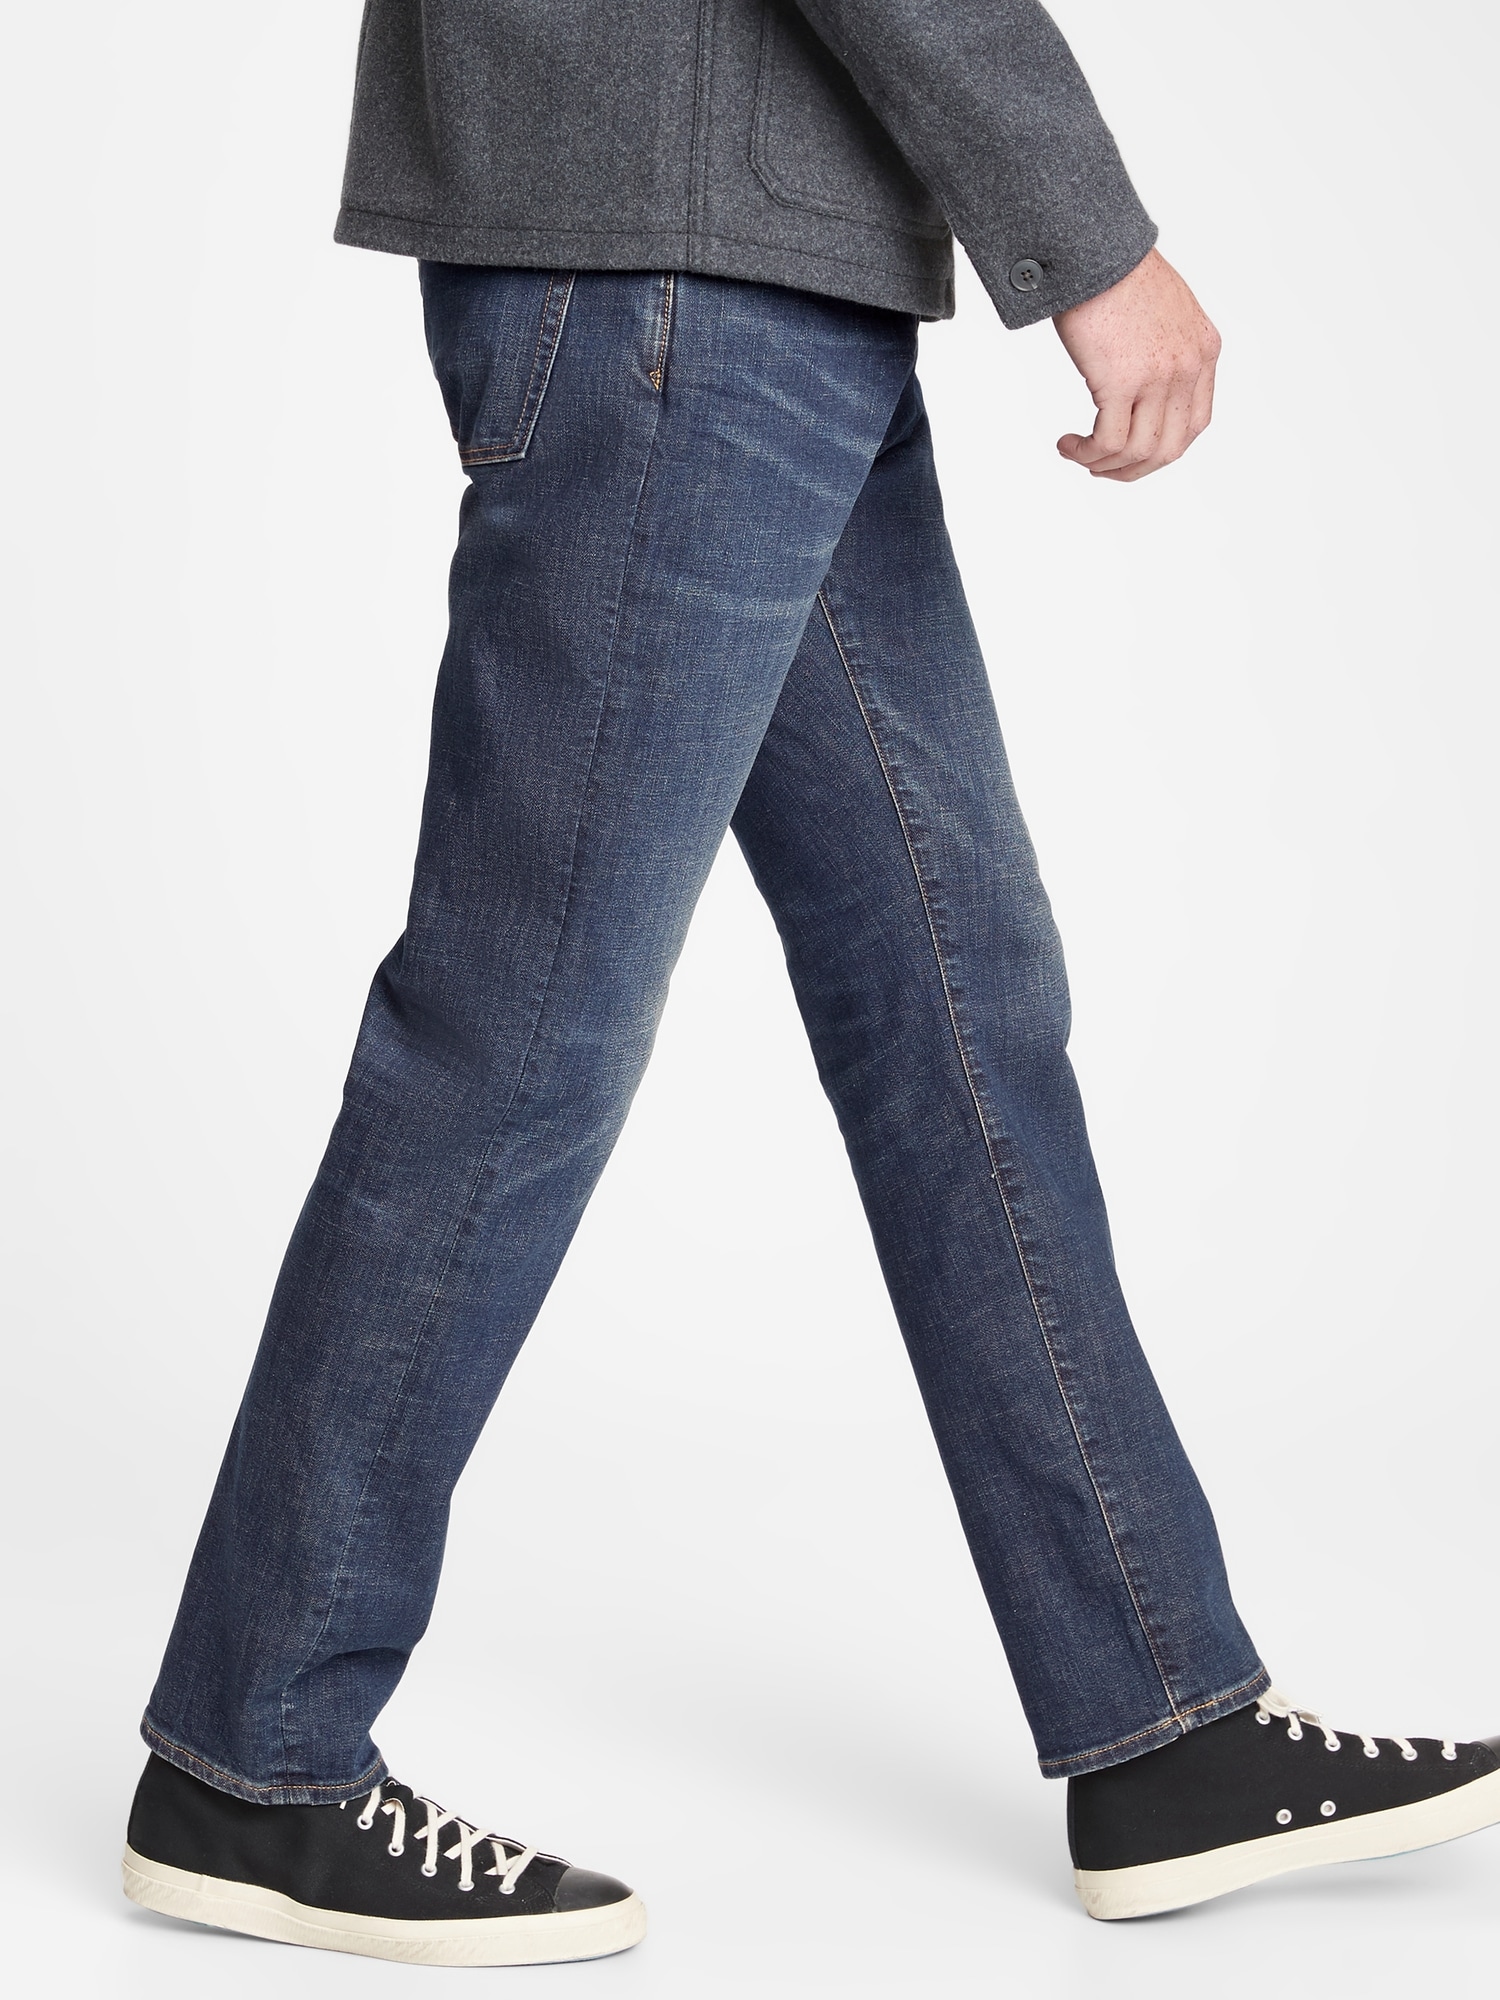 Athletic Taper Jeans in GapFlex | Gap